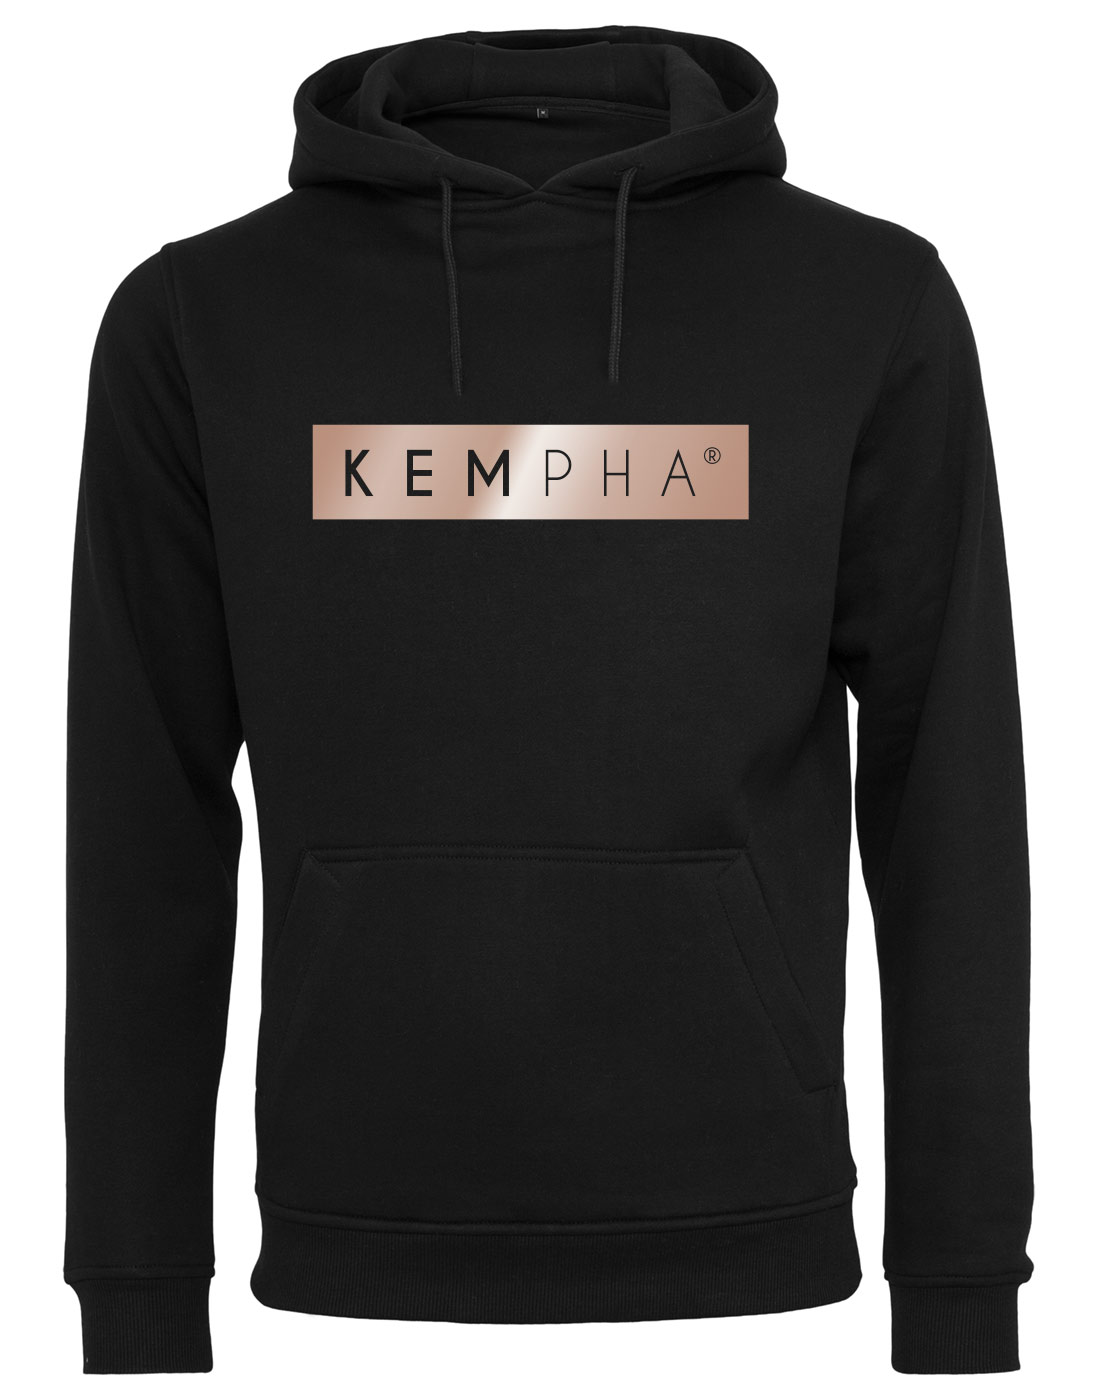 Kempha Premium Hoodie ROSEgold auf schwarz